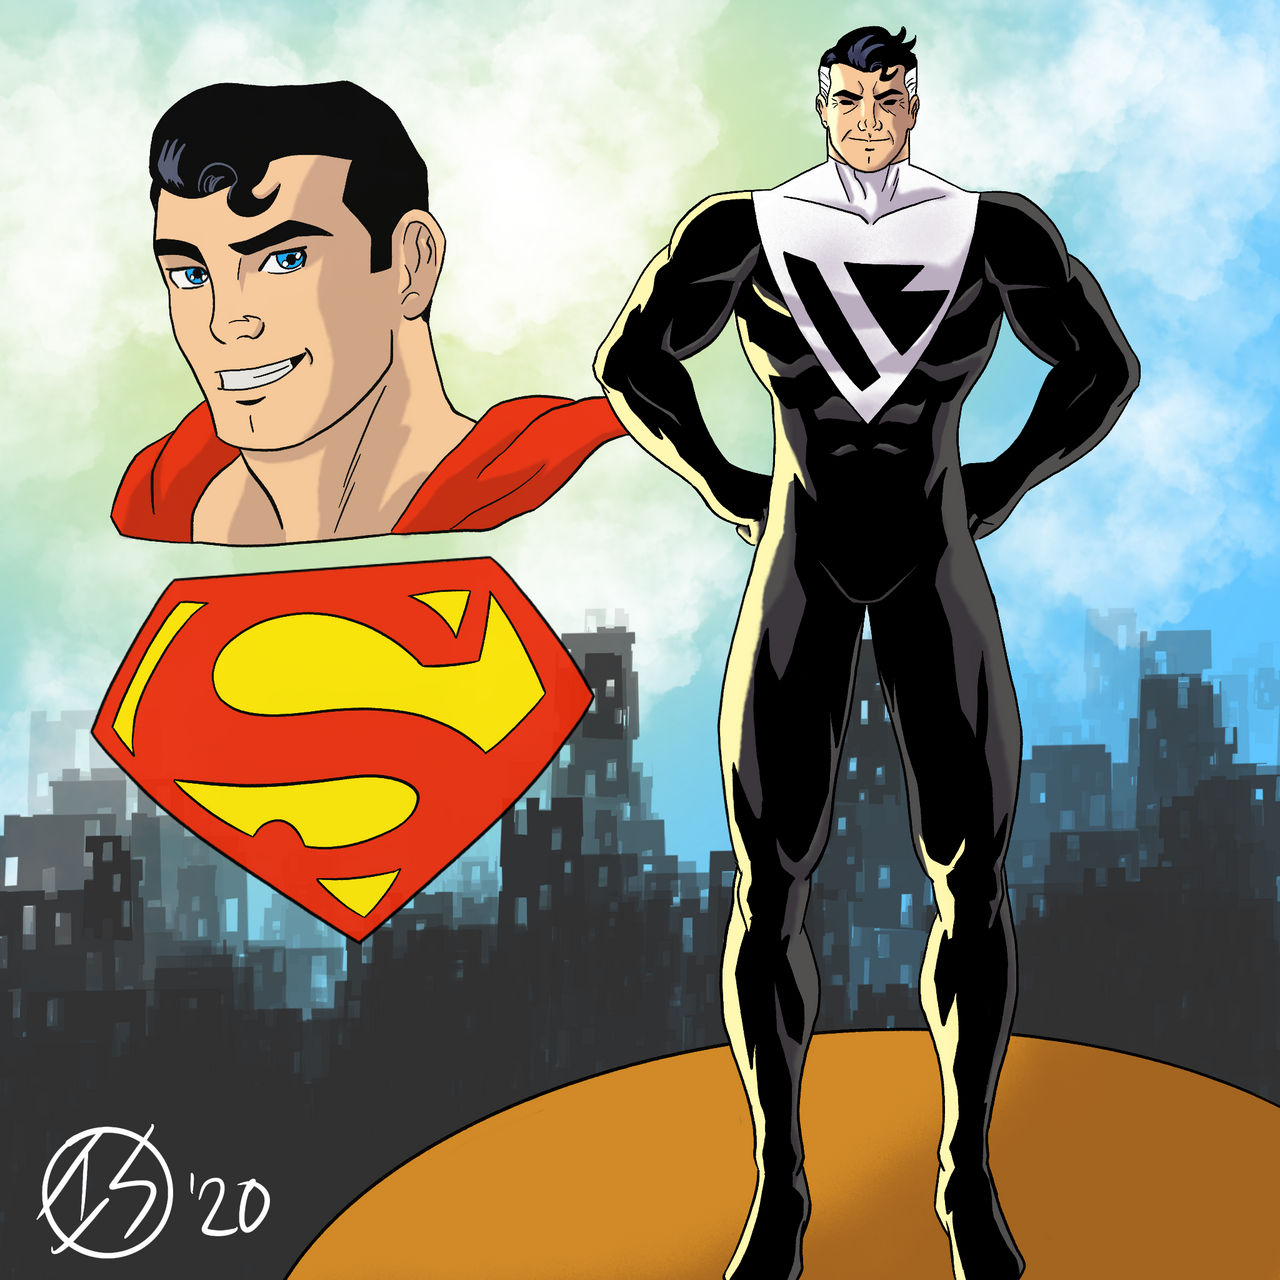 Réparer, pour avancer [Silver Banshee] Superman_beyond_by_isaiahsimmonsartist_de5wmap-fullview.jpg?token=eyJ0eXAiOiJKV1QiLCJhbGciOiJIUzI1NiJ9.eyJzdWIiOiJ1cm46YXBwOjdlMGQxODg5ODIyNjQzNzNhNWYwZDQxNWVhMGQyNmUwIiwiaXNzIjoidXJuOmFwcDo3ZTBkMTg4OTgyMjY0MzczYTVmMGQ0MTVlYTBkMjZlMCIsIm9iaiI6W1t7ImhlaWdodCI6Ijw9MTI4MCIsInBhdGgiOiJcL2ZcL2MxOGQ2MTVlLTQxZWYtNGQ3Ni1iMGRkLWNjYzk5M2VhMWZkYVwvZGU1d21hcC0yZTY1MTFiNC0yNDBjLTRjNDktOTY0Mi0zY2YyNjhhMzc0ZWQucG5nIiwid2lkdGgiOiI8PTEyODAifV1dLCJhdWQiOlsidXJuOnNlcnZpY2U6aW1hZ2Uub3BlcmF0aW9ucyJdfQ